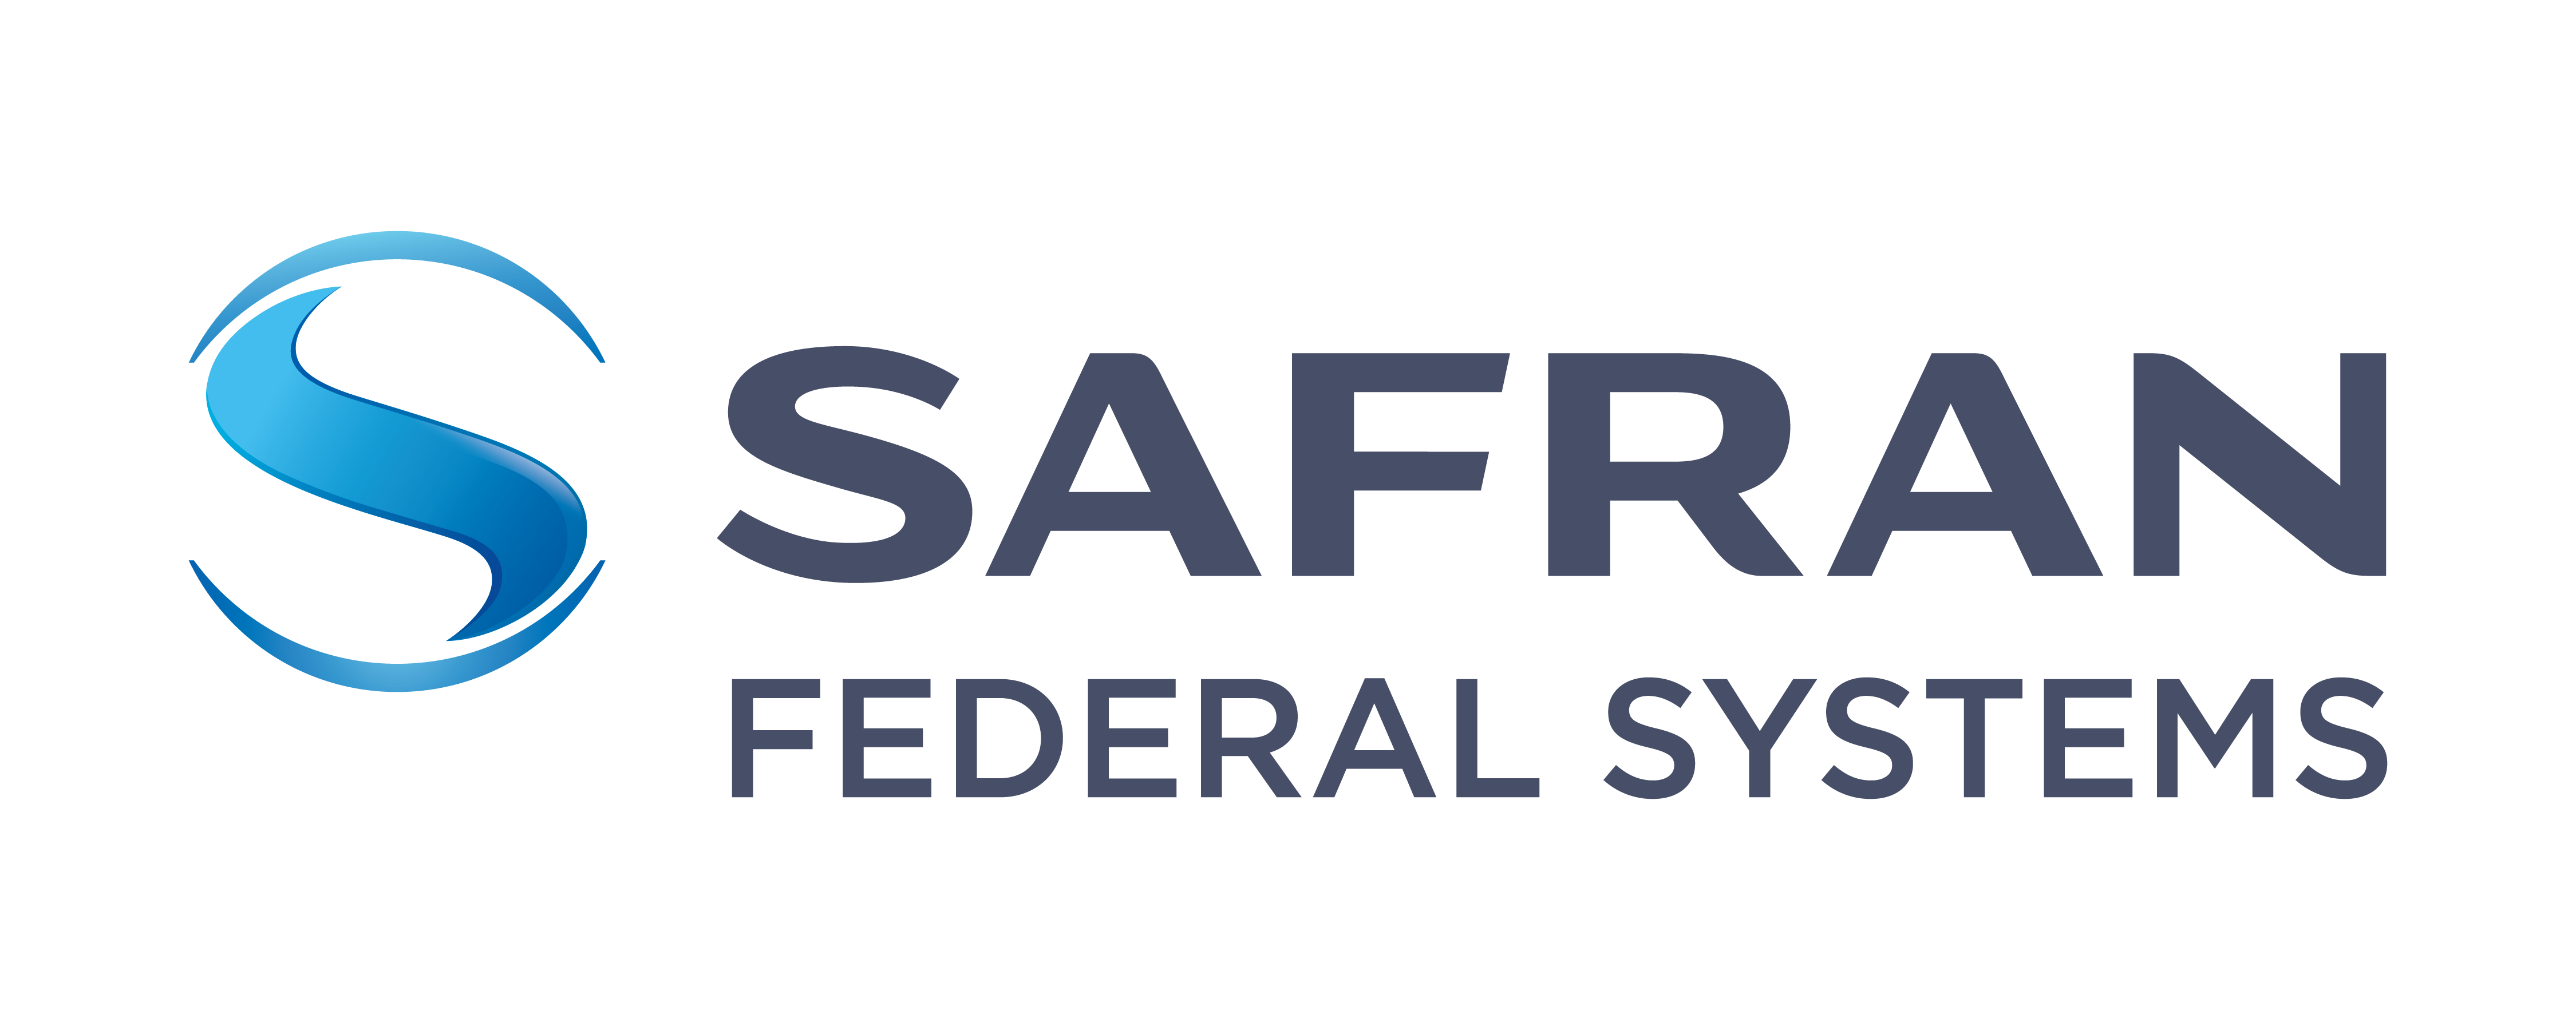 Safran_Federal_Systems_logo_